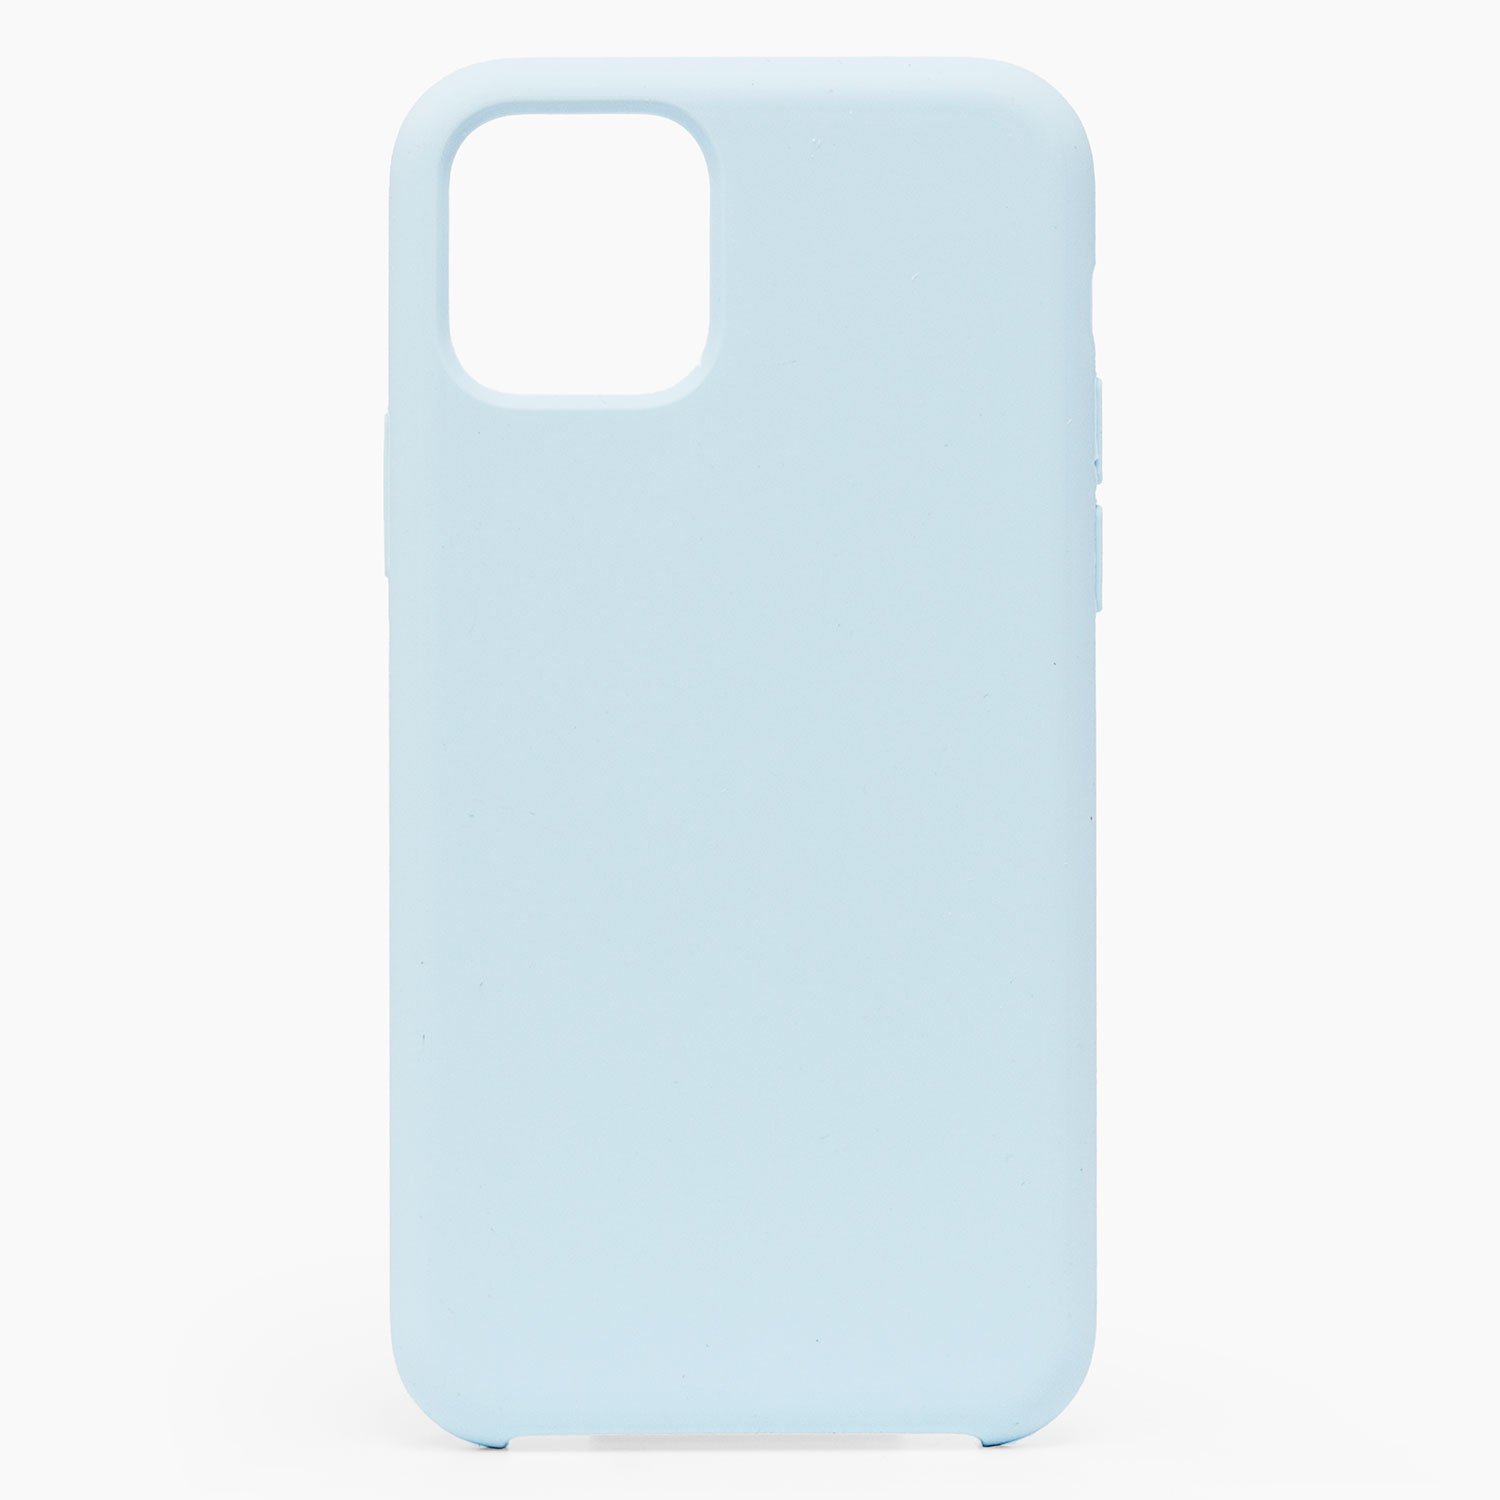 Чехол-накладка Activ Original Design для смартфона Apple iPhone 11 Pro Max, soft-touch, пастельно-синий (112765)